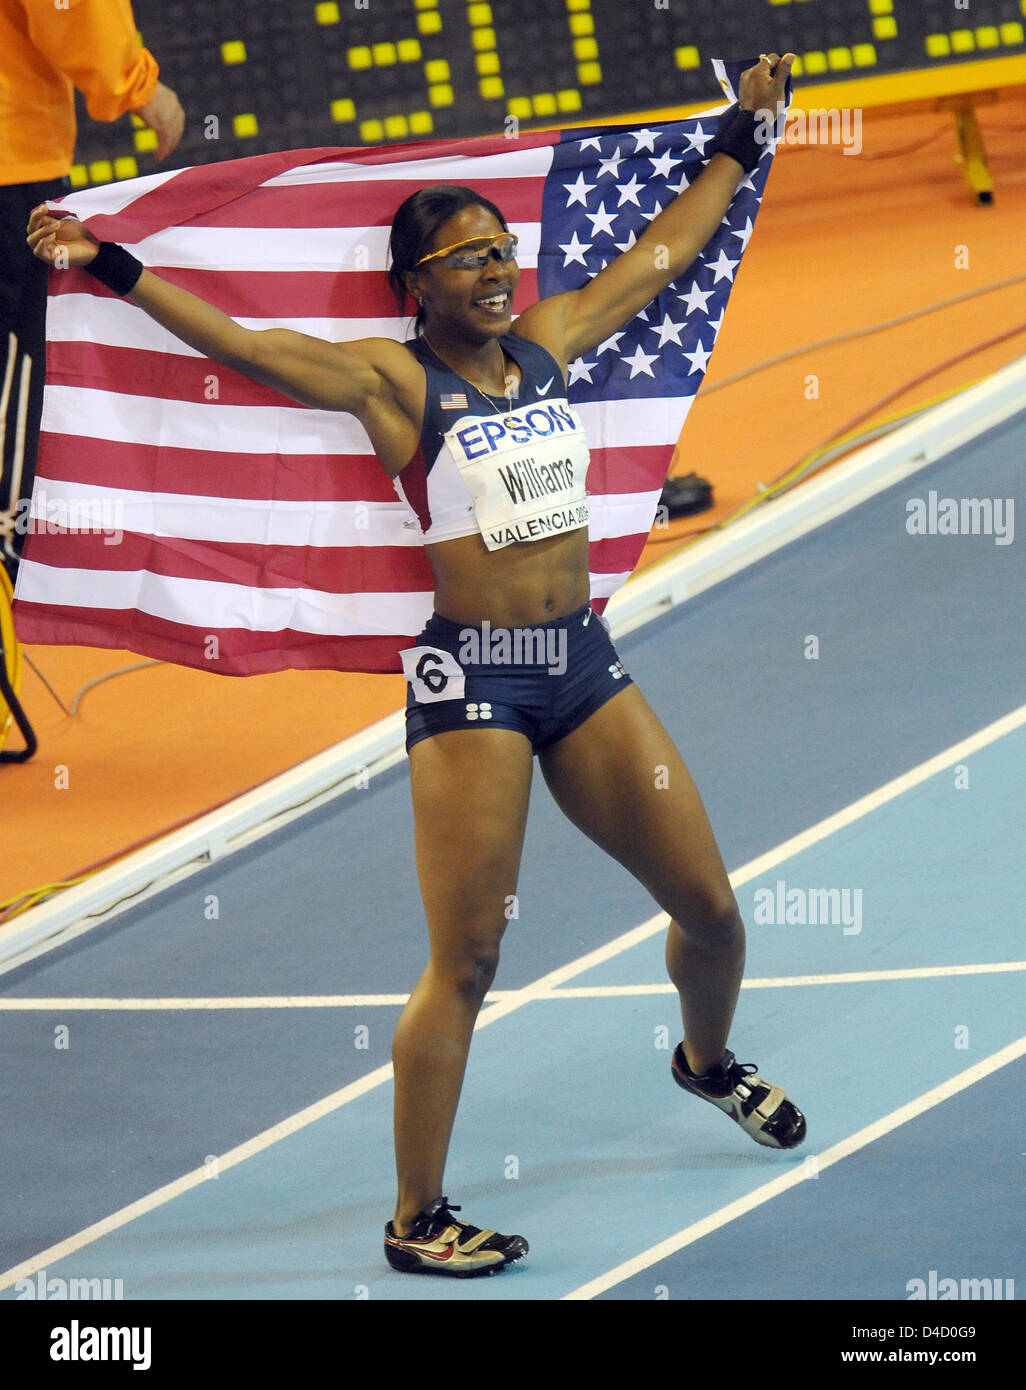 US-Athleten Angela Williams jubelt nach dem Sieg der 60m Frauen Finale am 12. IAAF World Indoor Championships in Athletics in Valencia, Spanien, 7. März 2008. Foto: GERO BRELOER Stockfoto